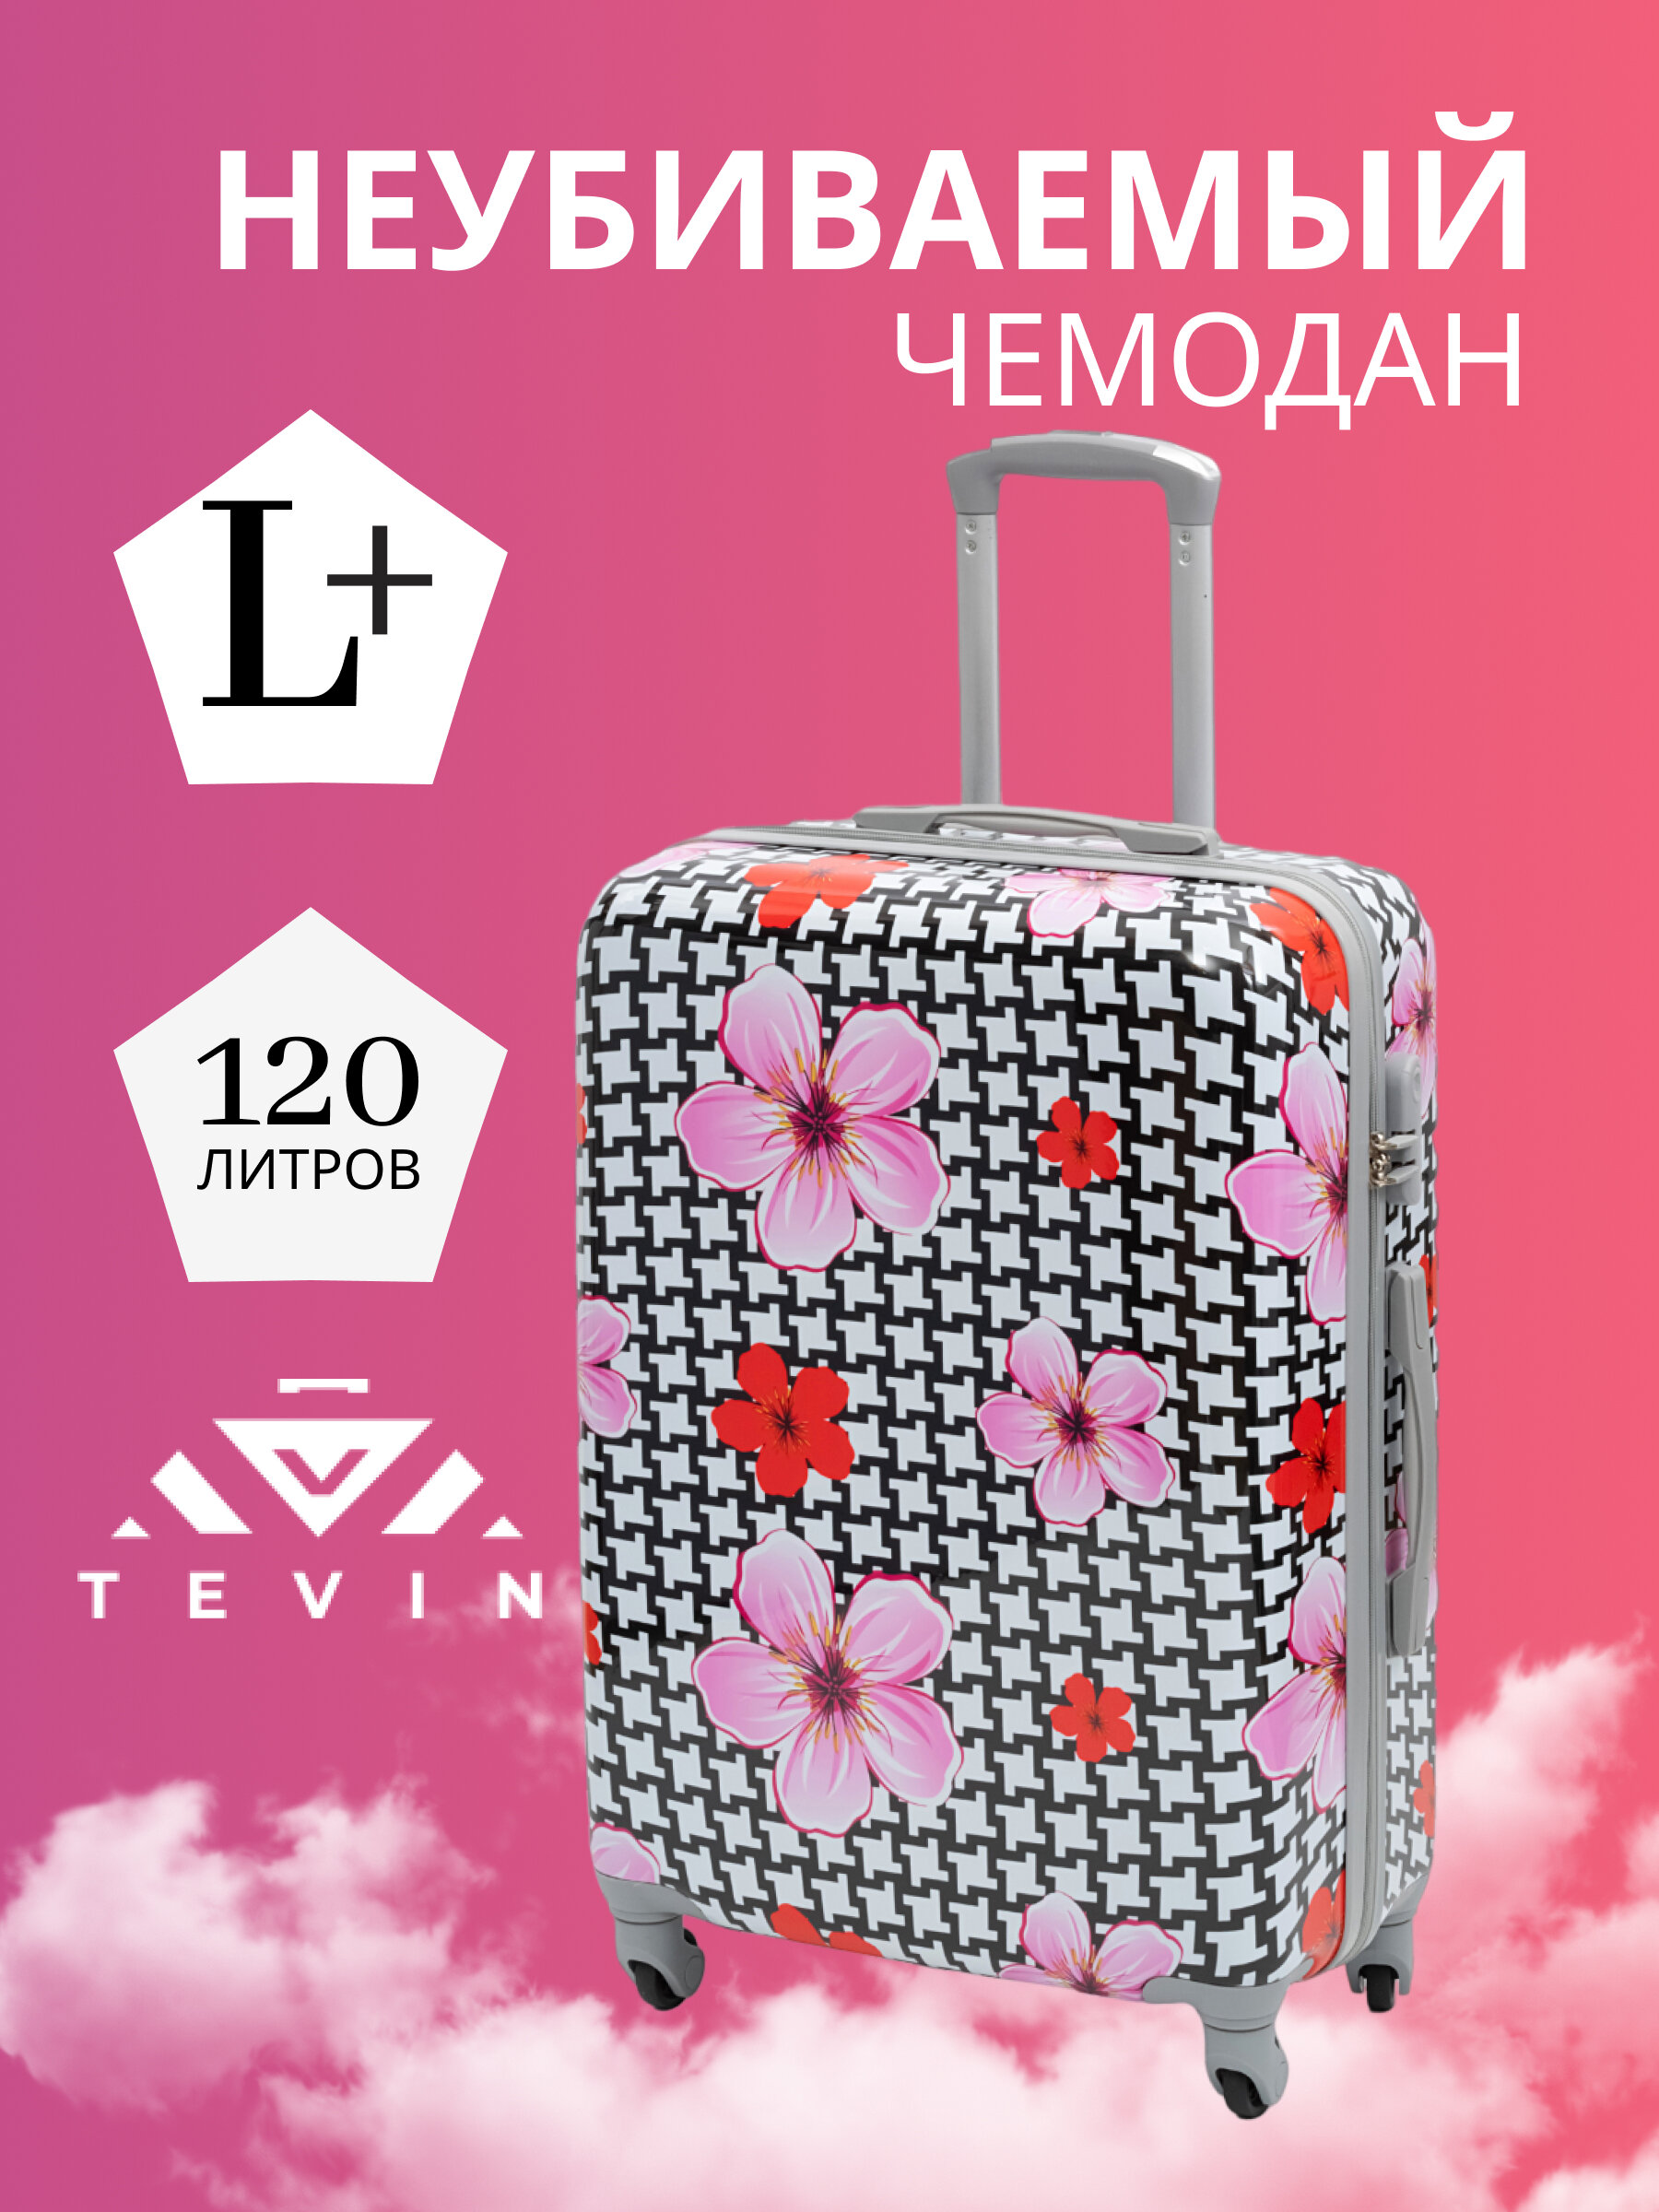 Чемодан на колесах дорожный большой семейный багаж для путешествий l+ TEVIN размер Л+ 76 см xl 120 л xxl прочный поликарбонат с рисунком